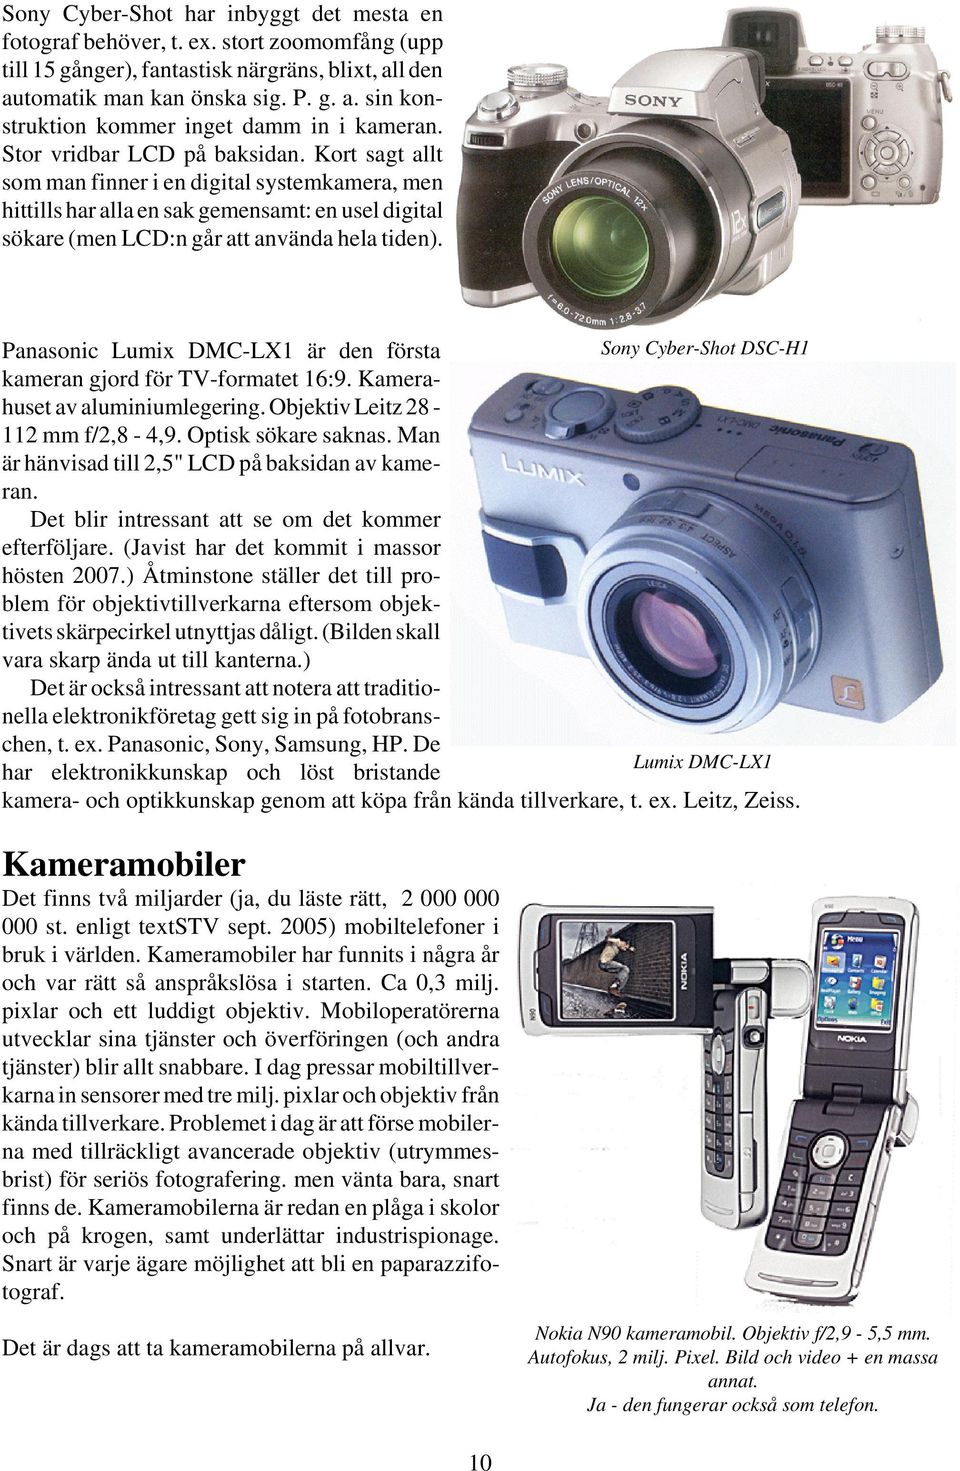 Panasonic Lumix DMC-LX1 är den första Sony Cyber-Shot DSC-H1 kameran gjord för TV-formatet 16:9. Kamerahuset av aluminiumlegering. Objektiv Leitz 28-112 mm f/2,8-4,9. Optisk sökare saknas.